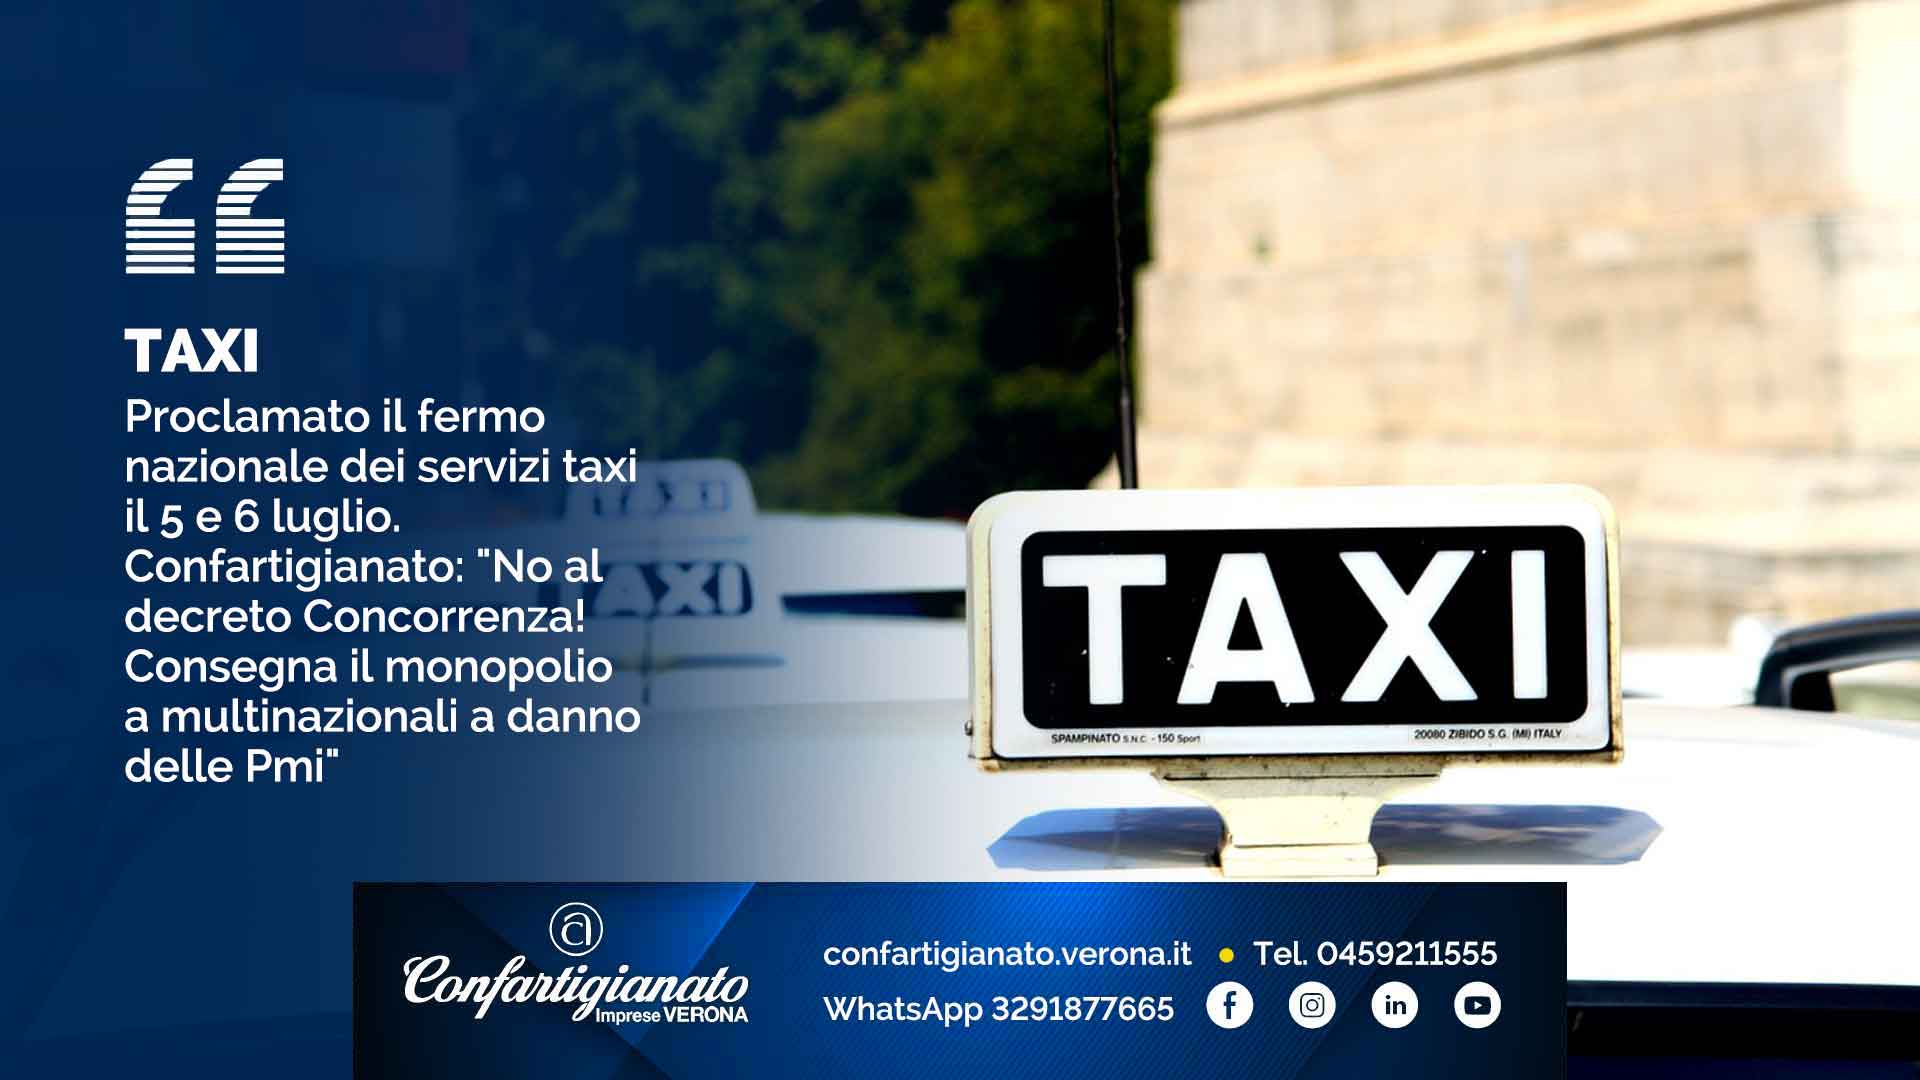 TAXI – Proclamato il fermo nazionale dei servizi taxi il 5 e 6 luglio. Confartigianato: "No al decreto Concorrenza! Consegna il monopolio a multinazionali a danno delle Pmi"